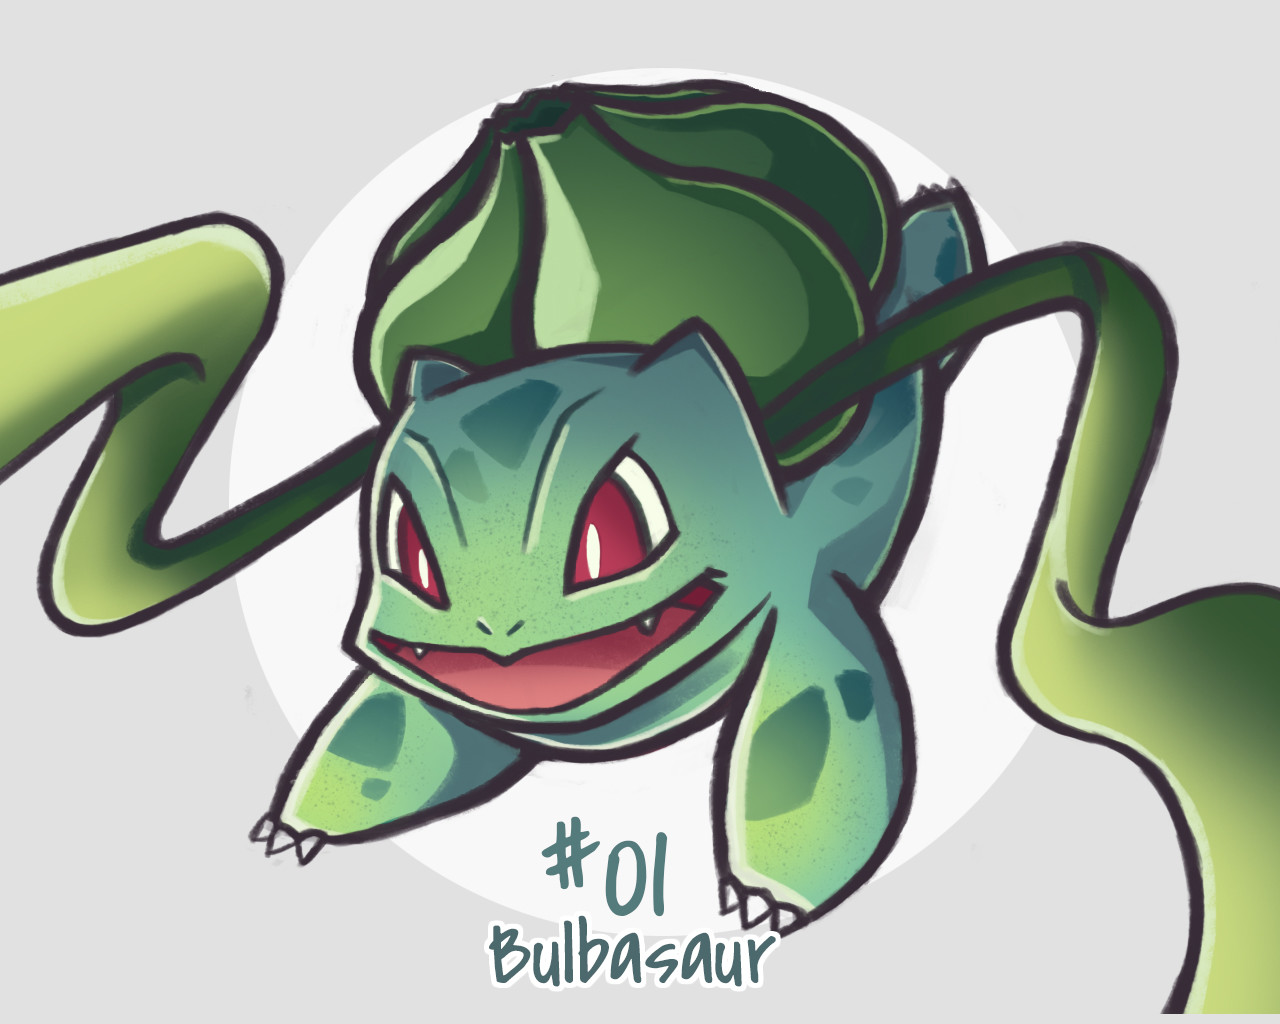 Como desenhar o Pokémon Bulbassauro